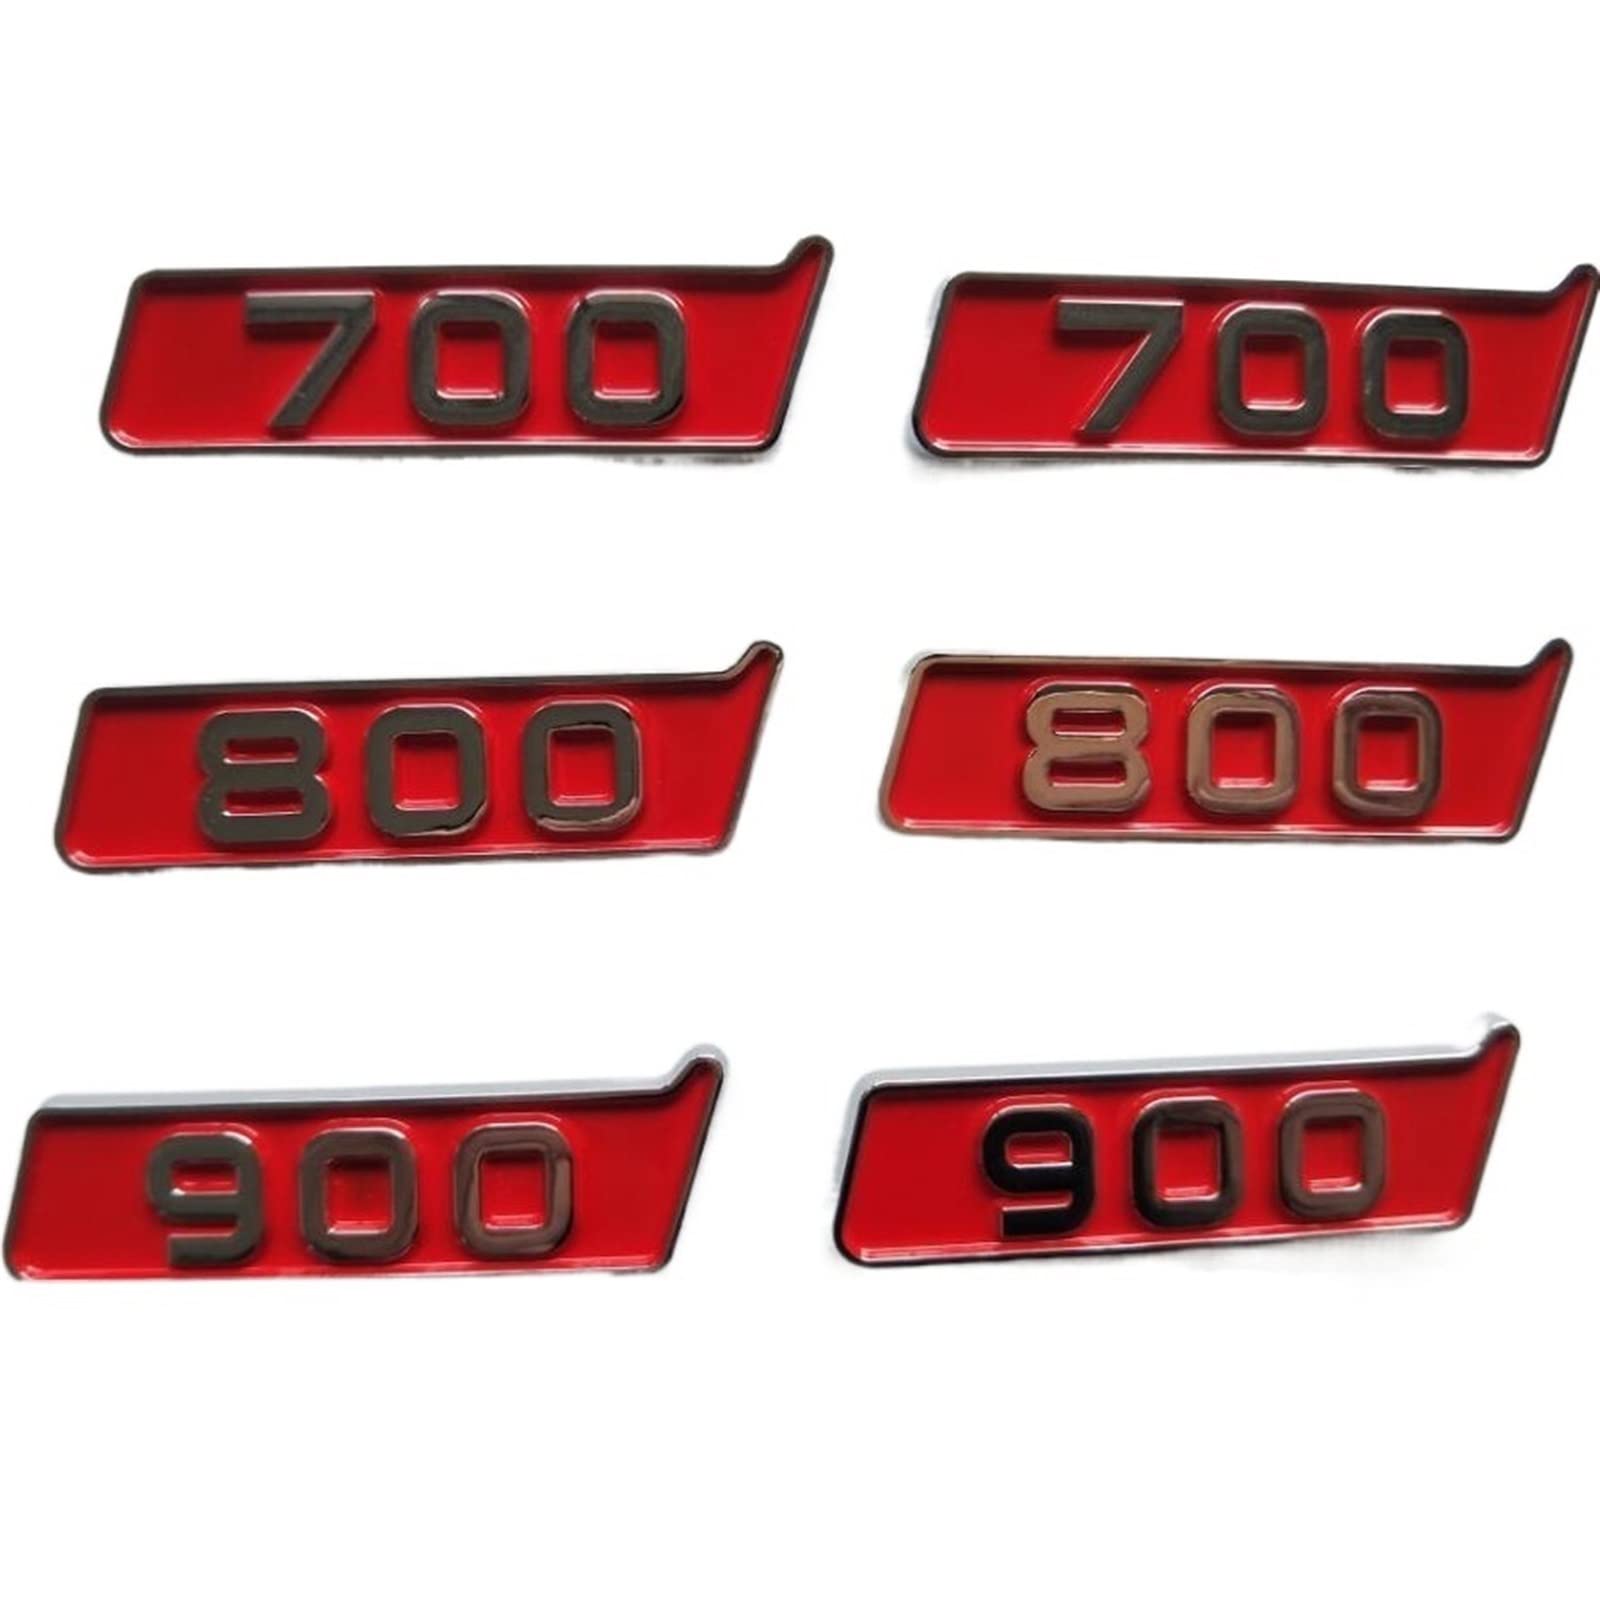 LILLIE Kotflügelnummer passend for BITURBO 700 800 900 Emblem Abzeichen 2 Stück Passend for Brabus G900 G800 G700 (Size : 8 0 0) von LILLIE